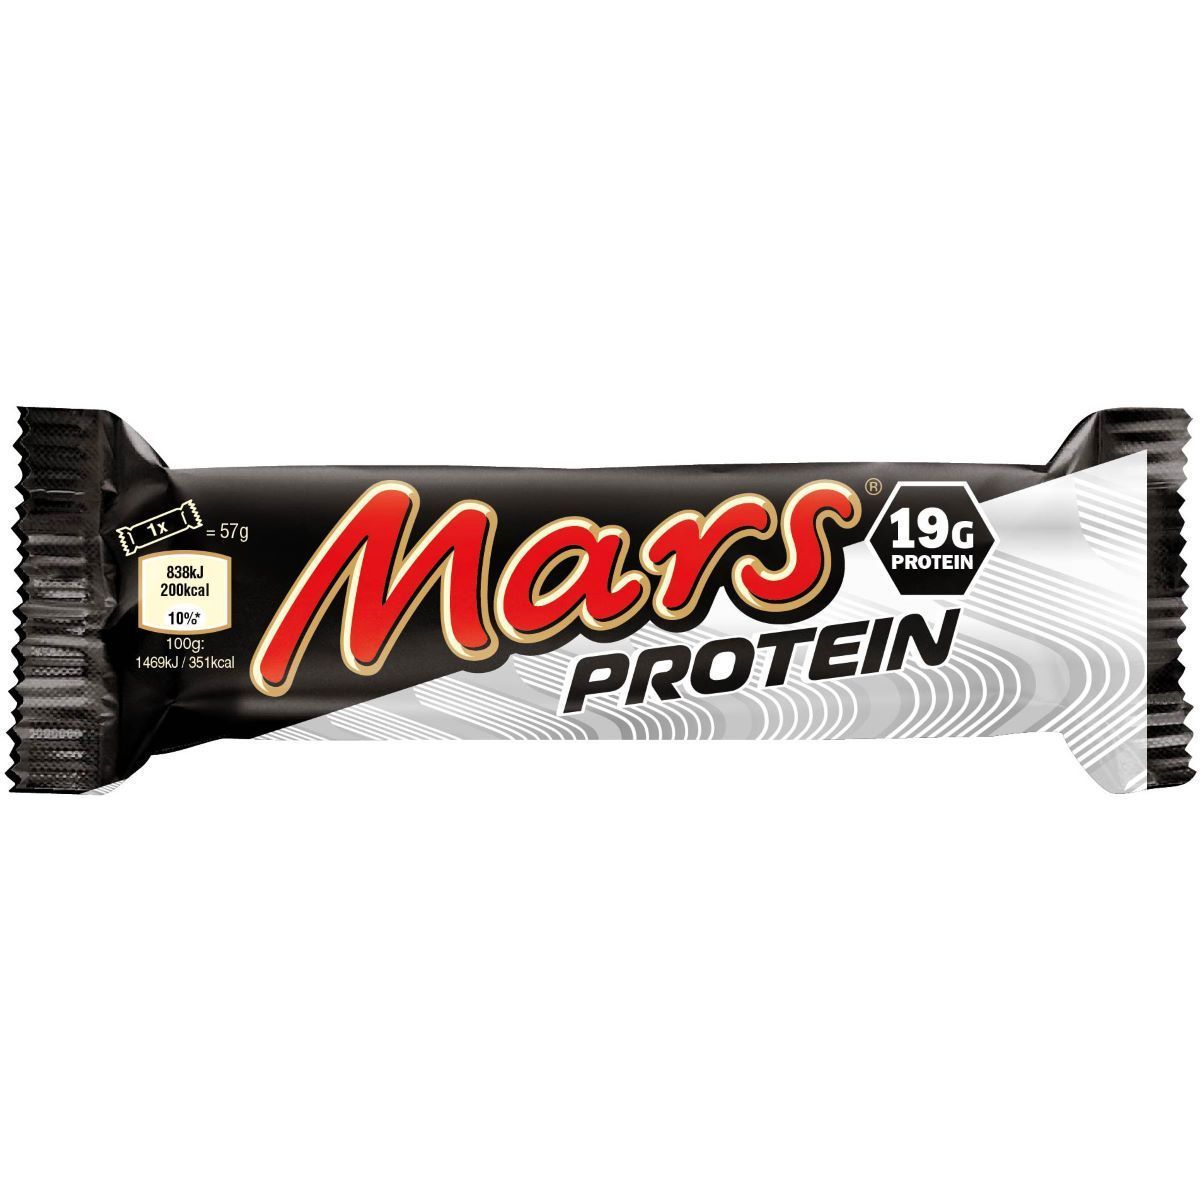 Протеиновый батончик Марс. Protein батончики Марс. Mars Protein Bar (50 г). Шоколадные батончики.